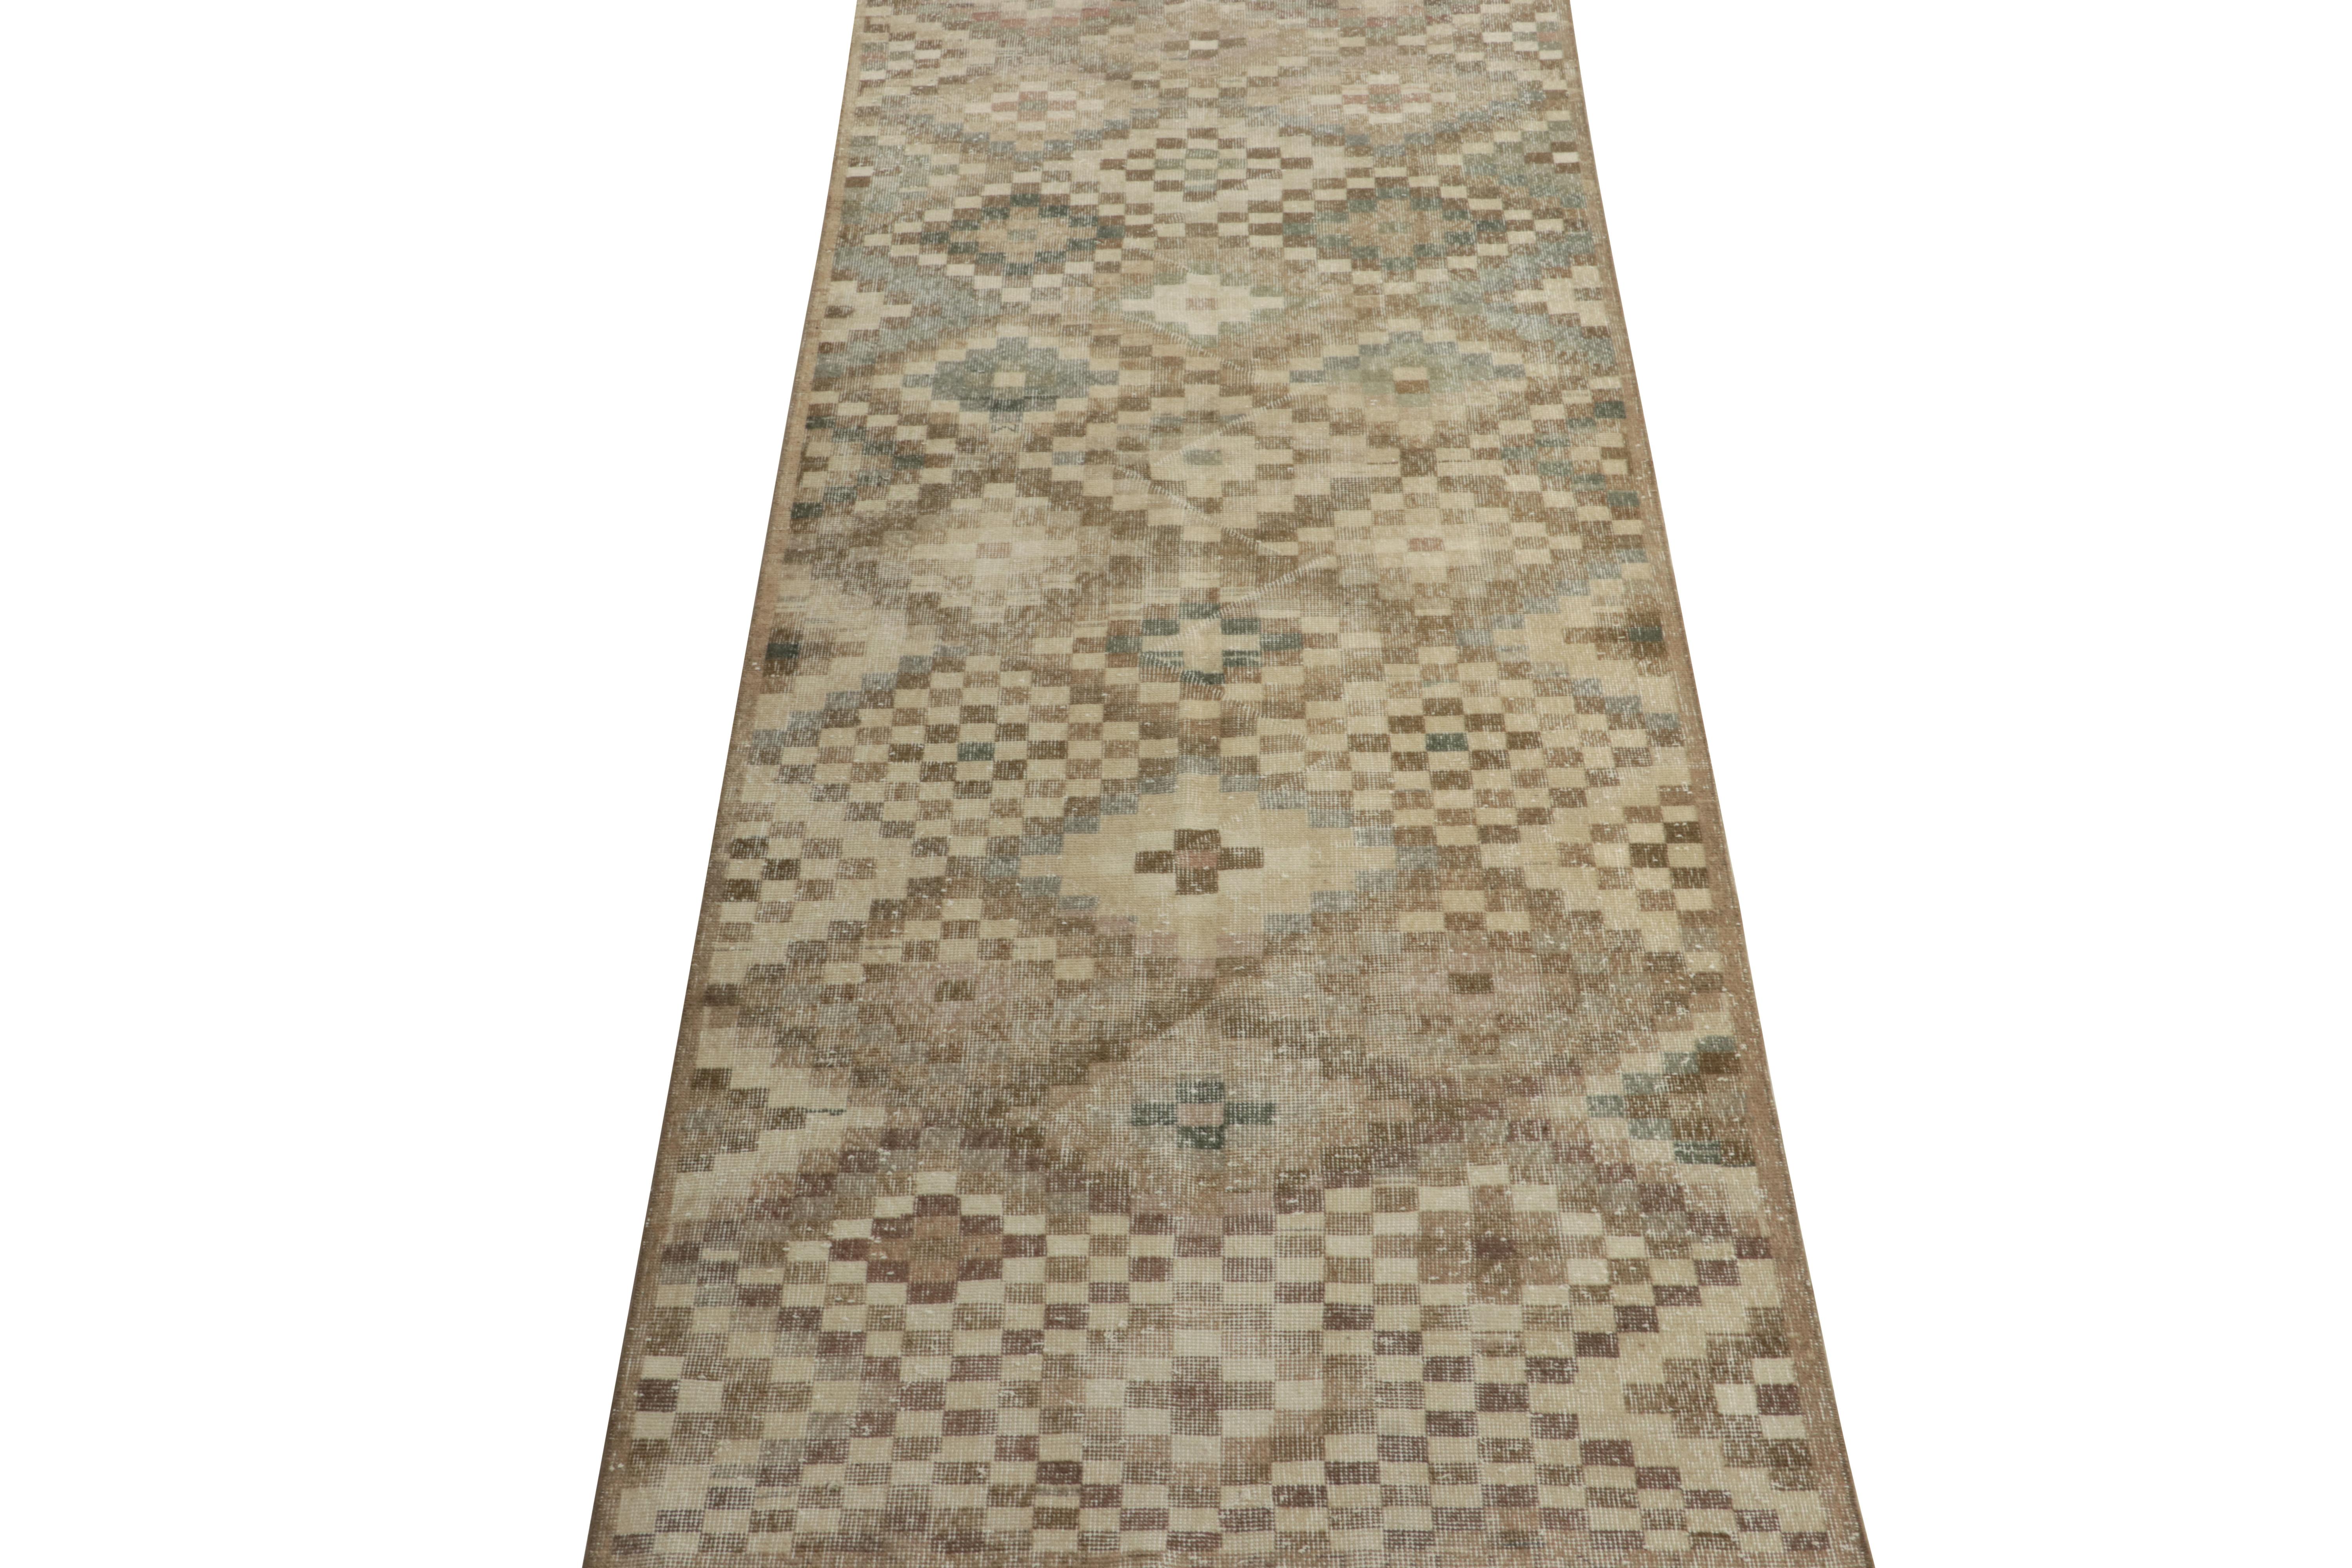 Von einem kühnen türkischen Designer stammt dieser 4x10 Vintage-Teppich aus den 1960er Jahren, der jetzt zu unserer Mid-Century Pasha-Kollektion gehört. 

Das Design im Shabby-Chic verzeiht das Spiel mit Farben und geometrischen Mustern und